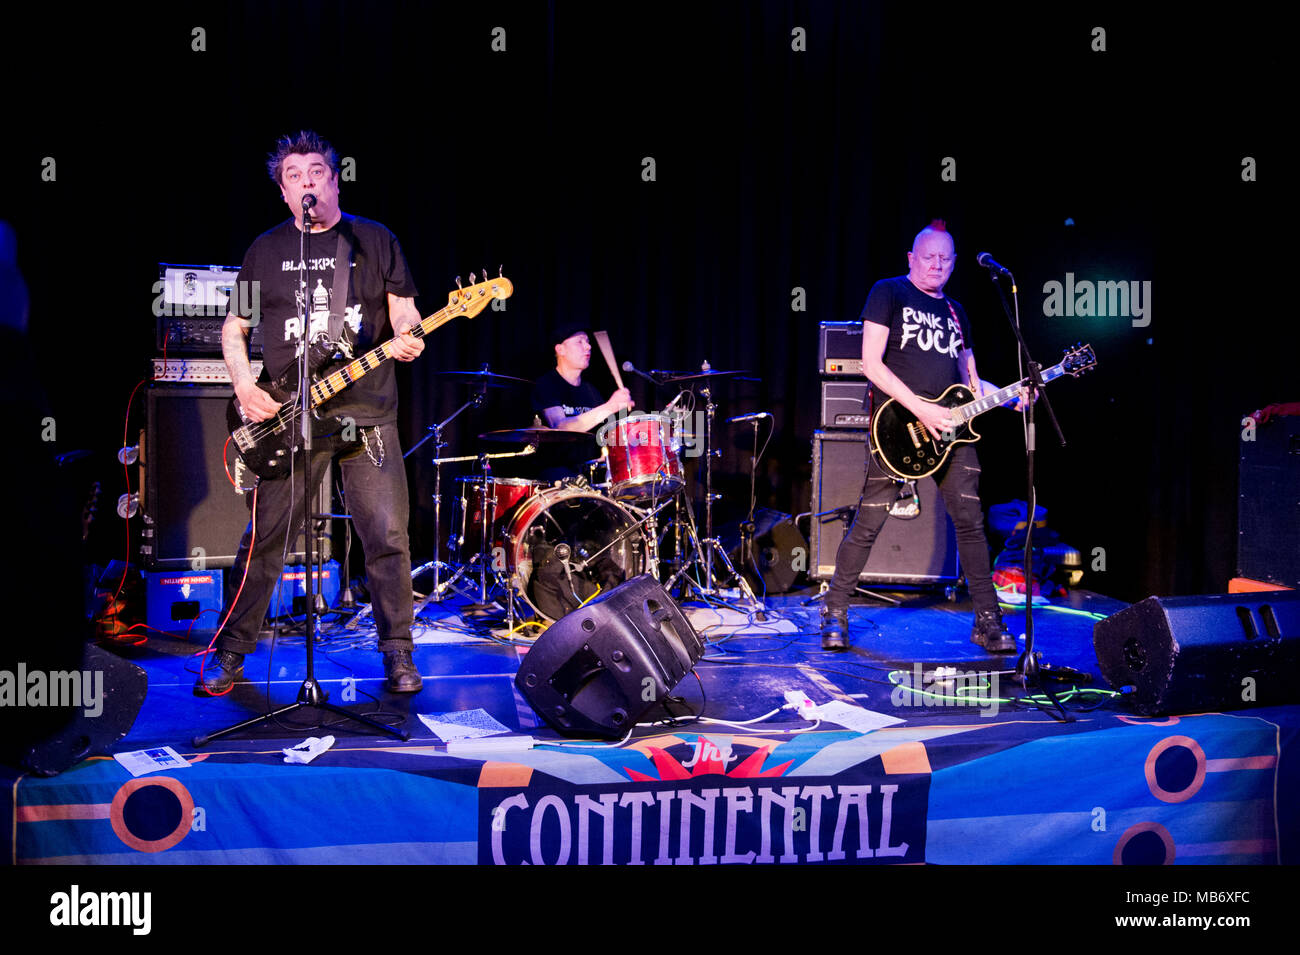 Le groupe de punk rock originaire de Lurkers en concert à la Continental, Preston, Lancashire. Arturo Bassick Chanteur et bassiste, à gauche. Le guitariste Dave Kemp droite. Banque D'Images